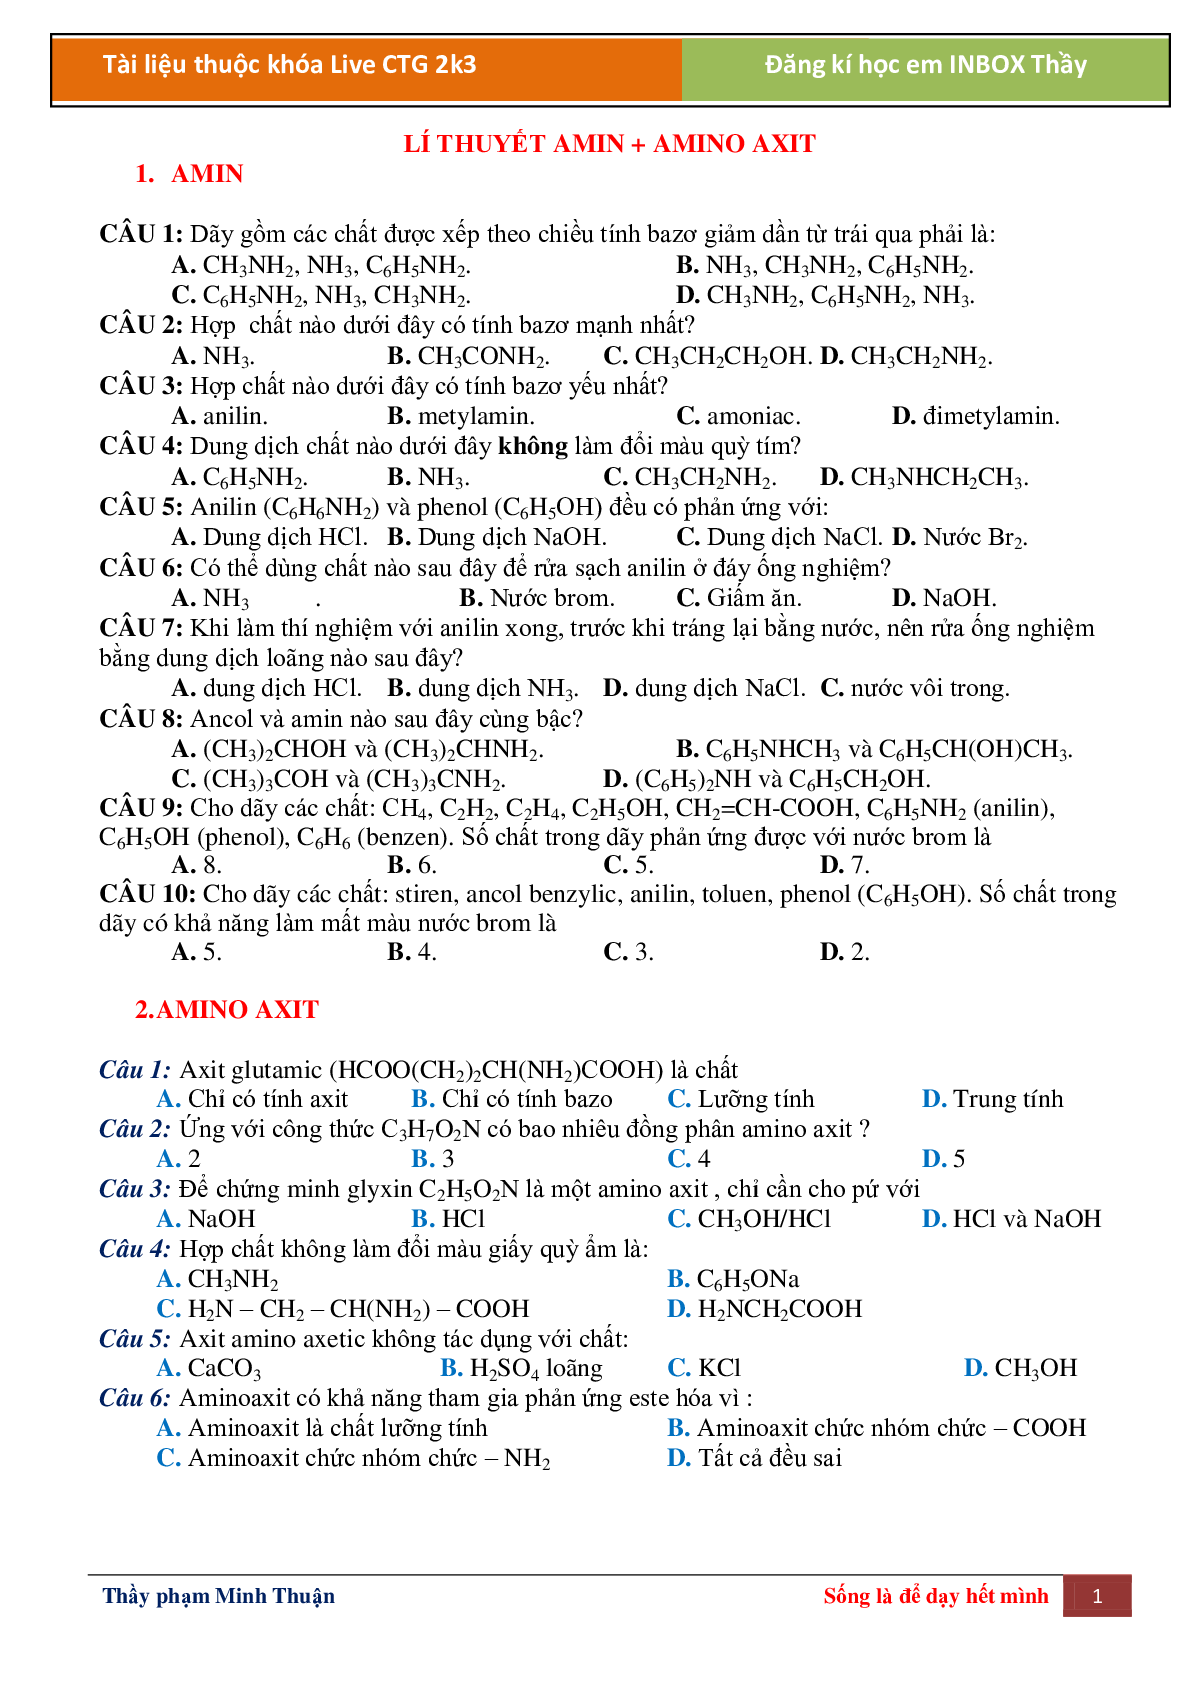 Lí thuyết Amin, amino axit môn Hóa học lớp 12 (trang 1)